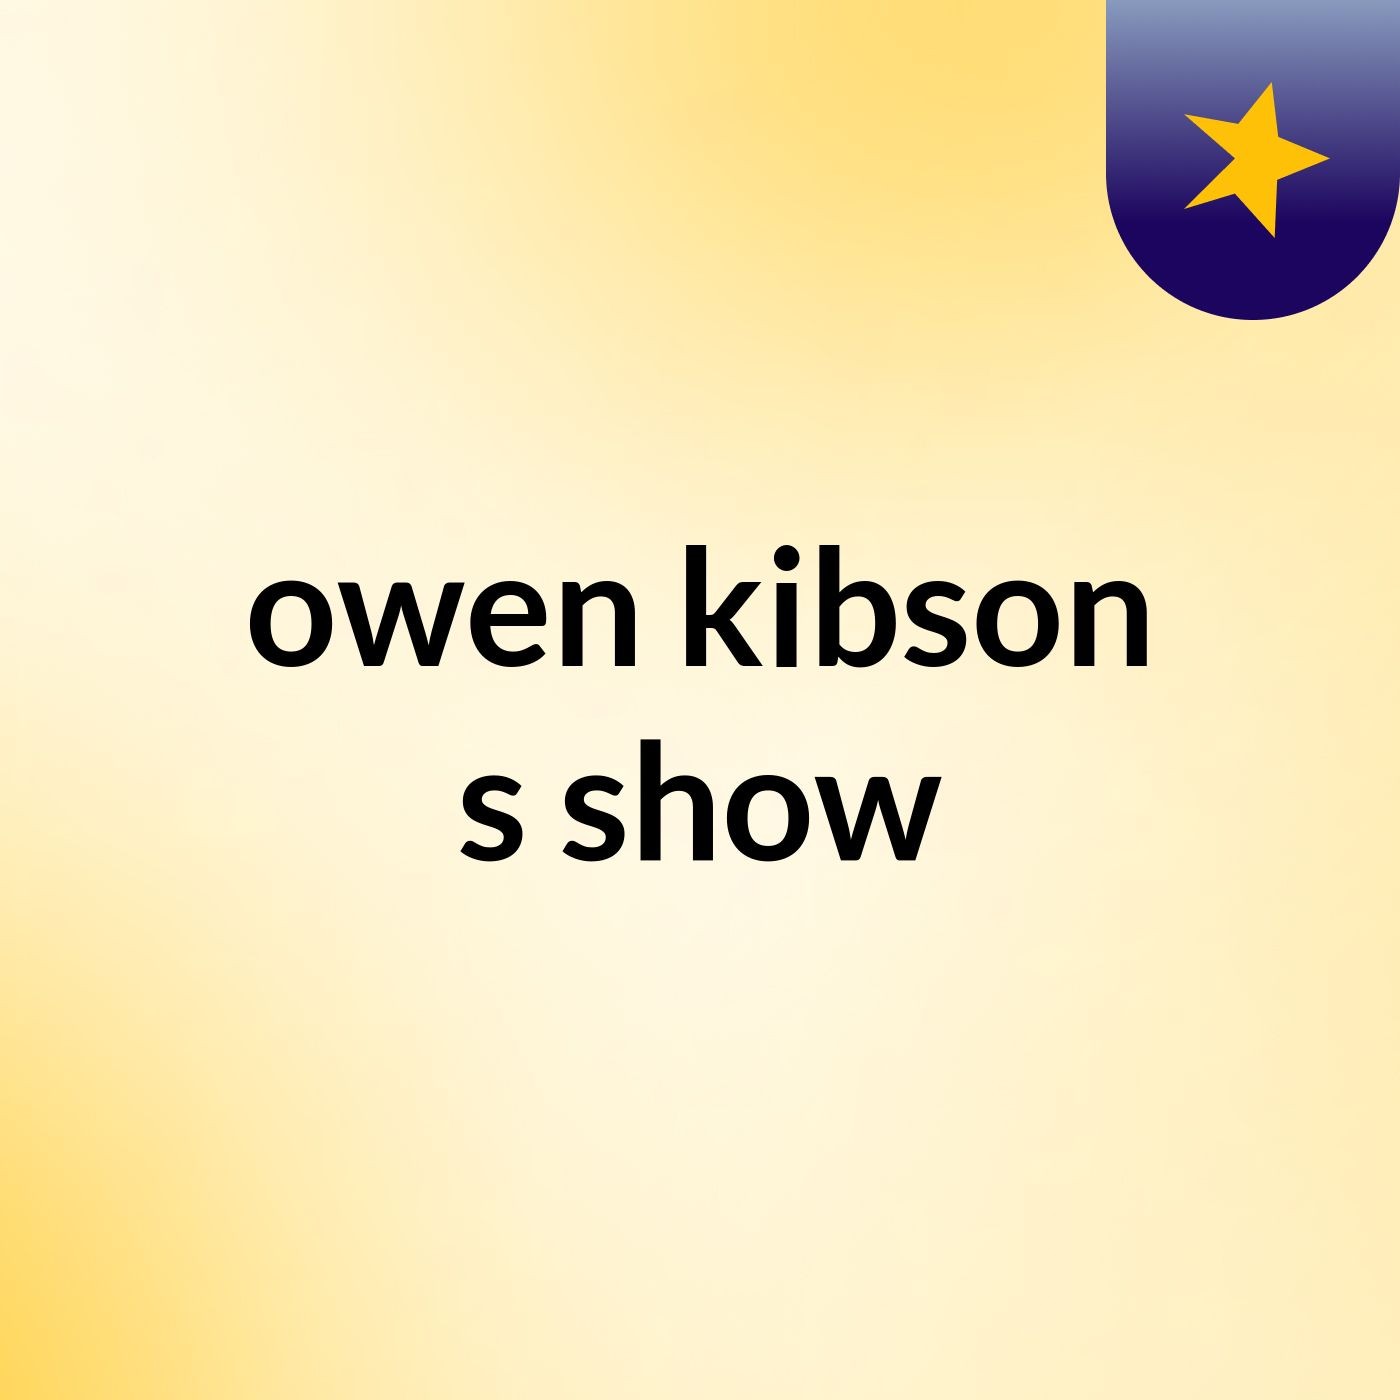 owen kibson's show